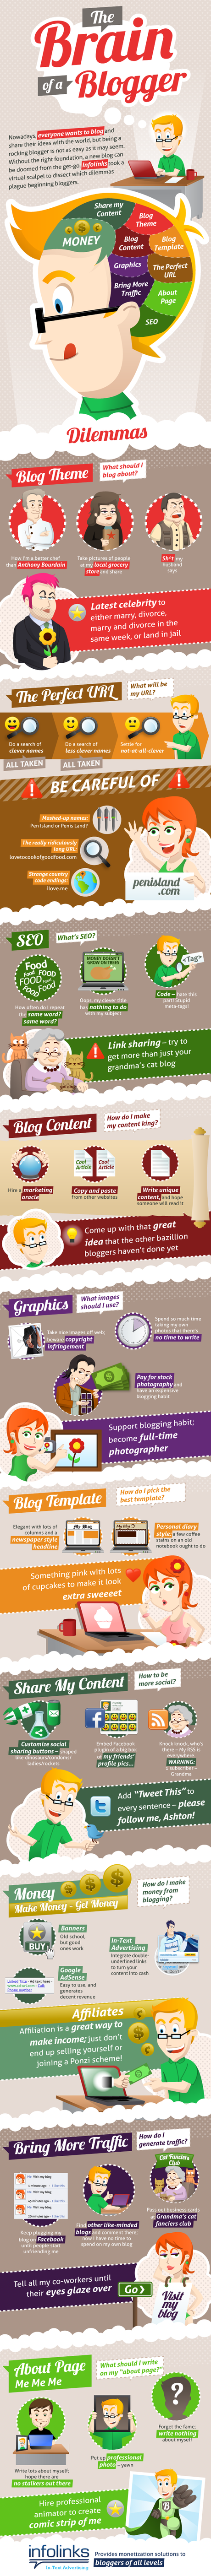 Infographie : Le cerveau du bloggeur